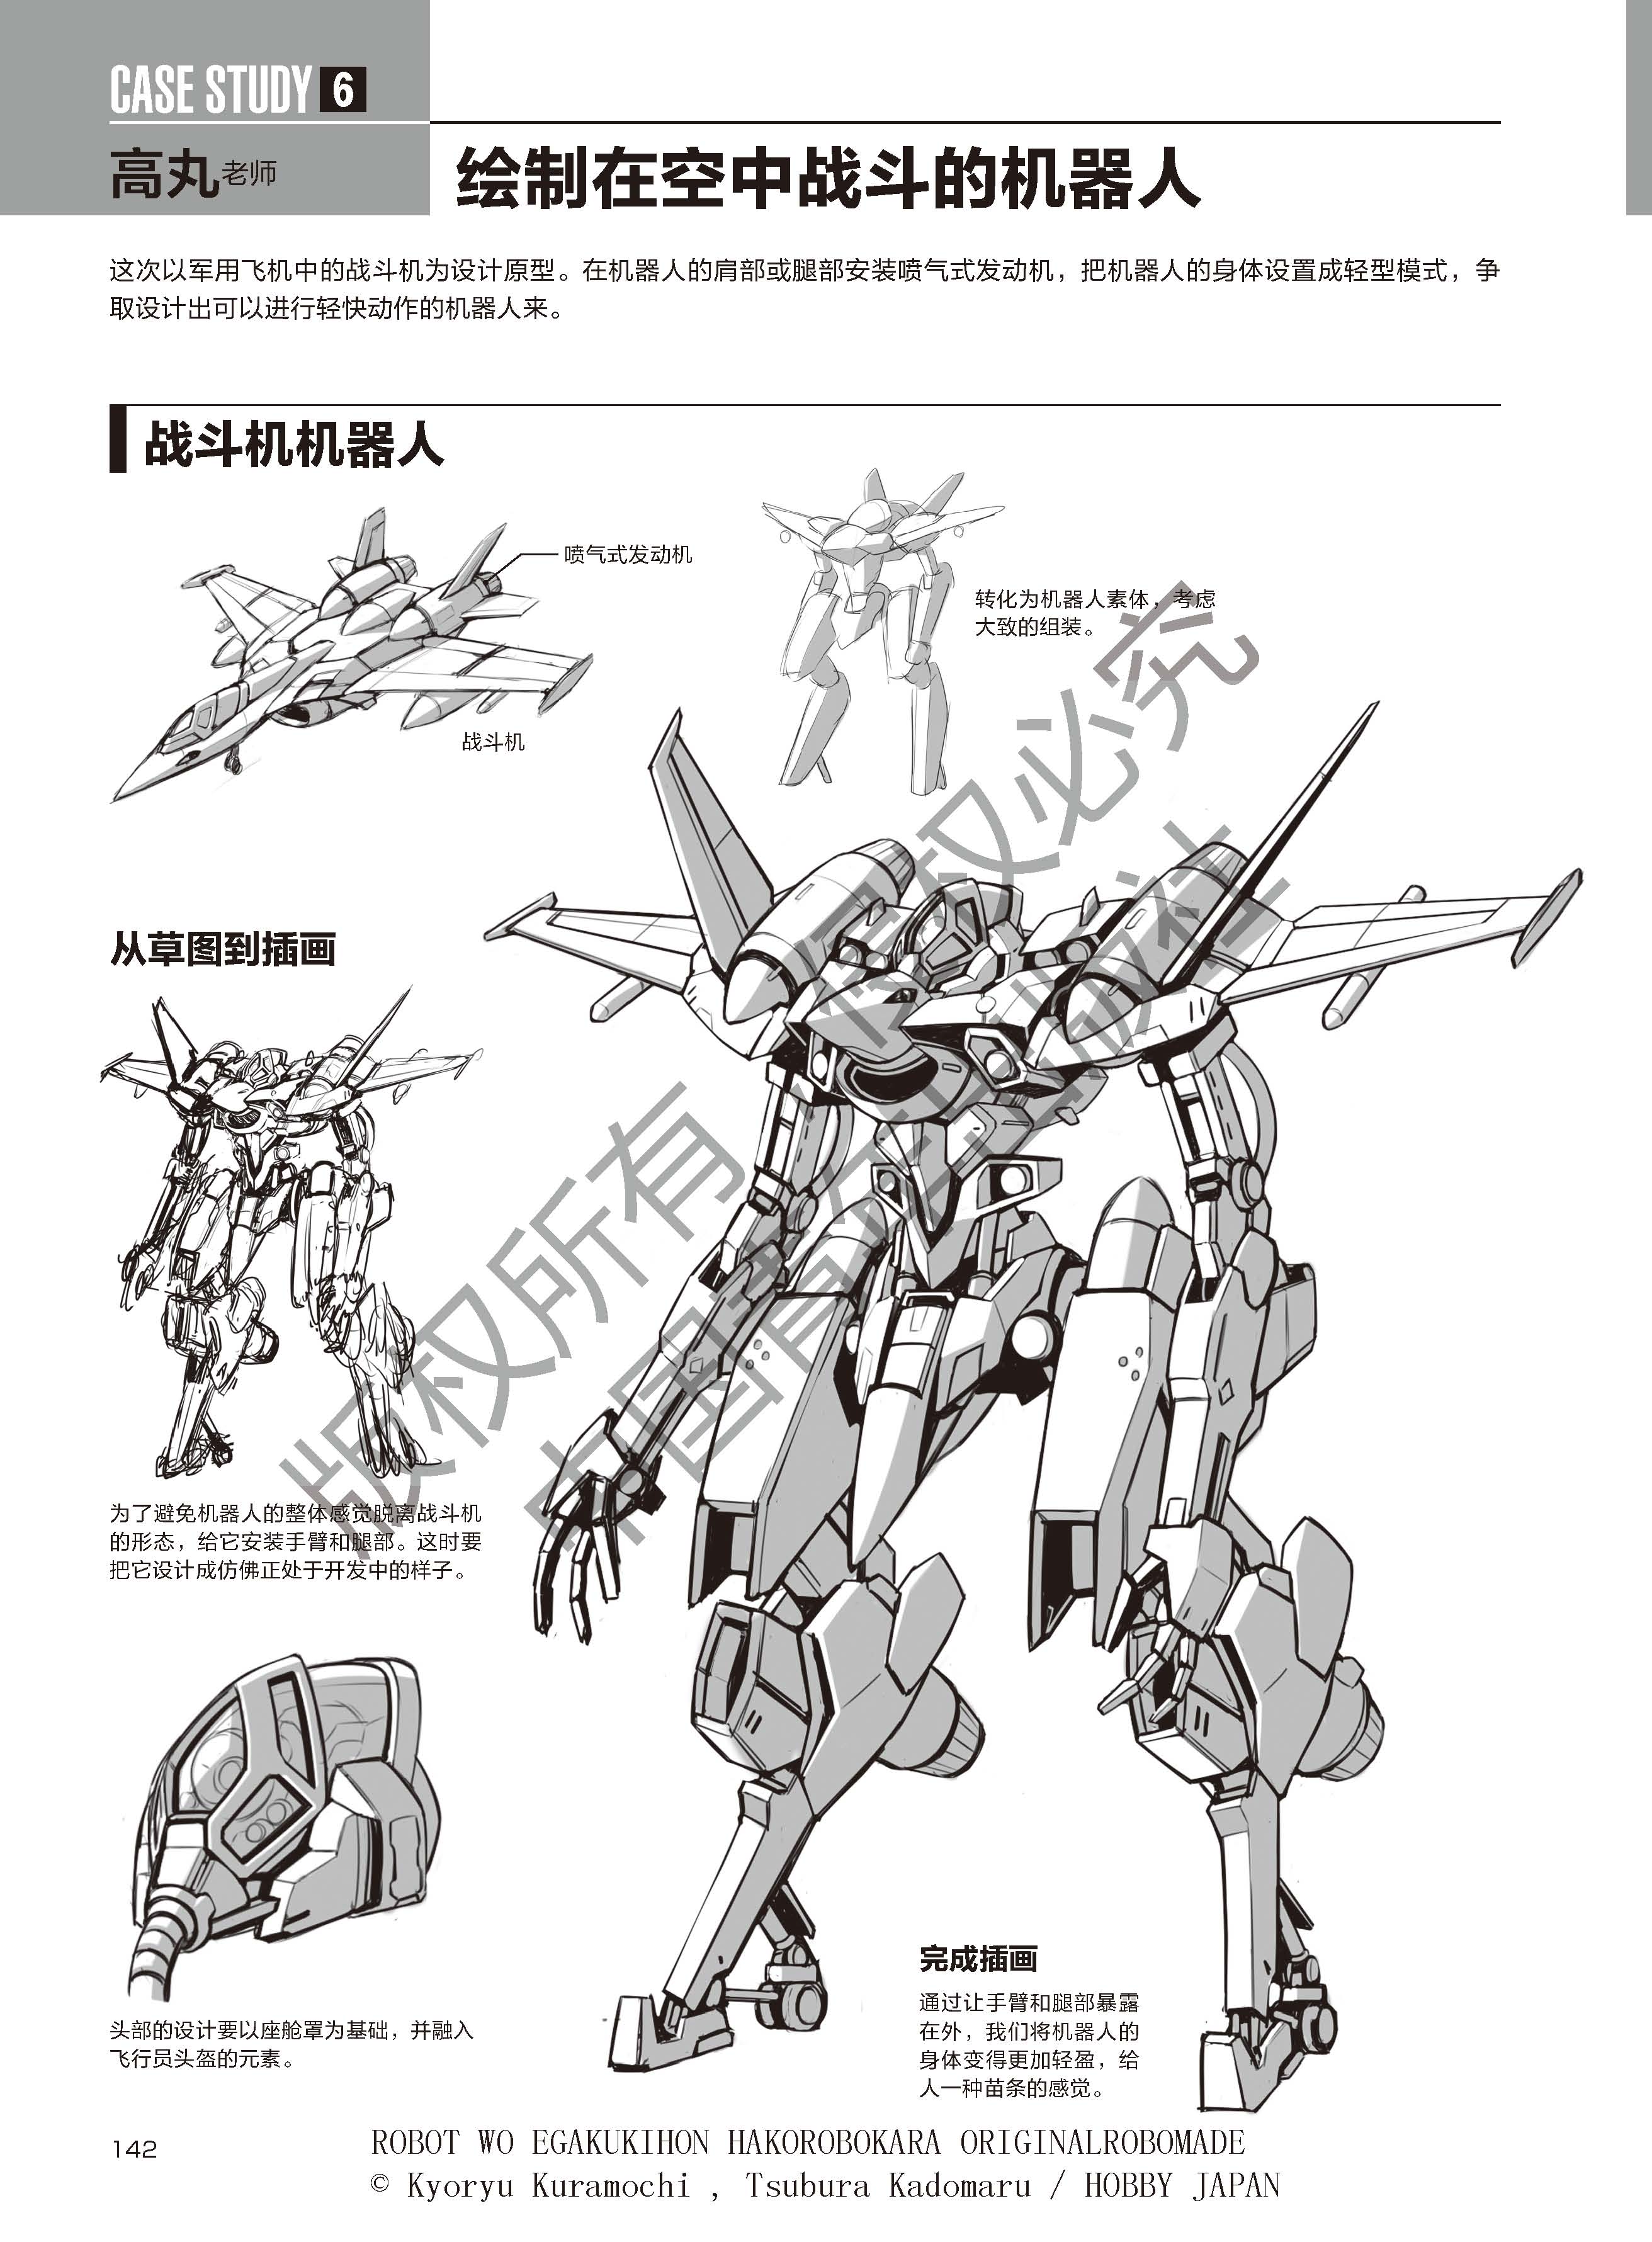 通过盒子机器人来描绘原创机器人,hobby japan授权超级机甲绘制技法全